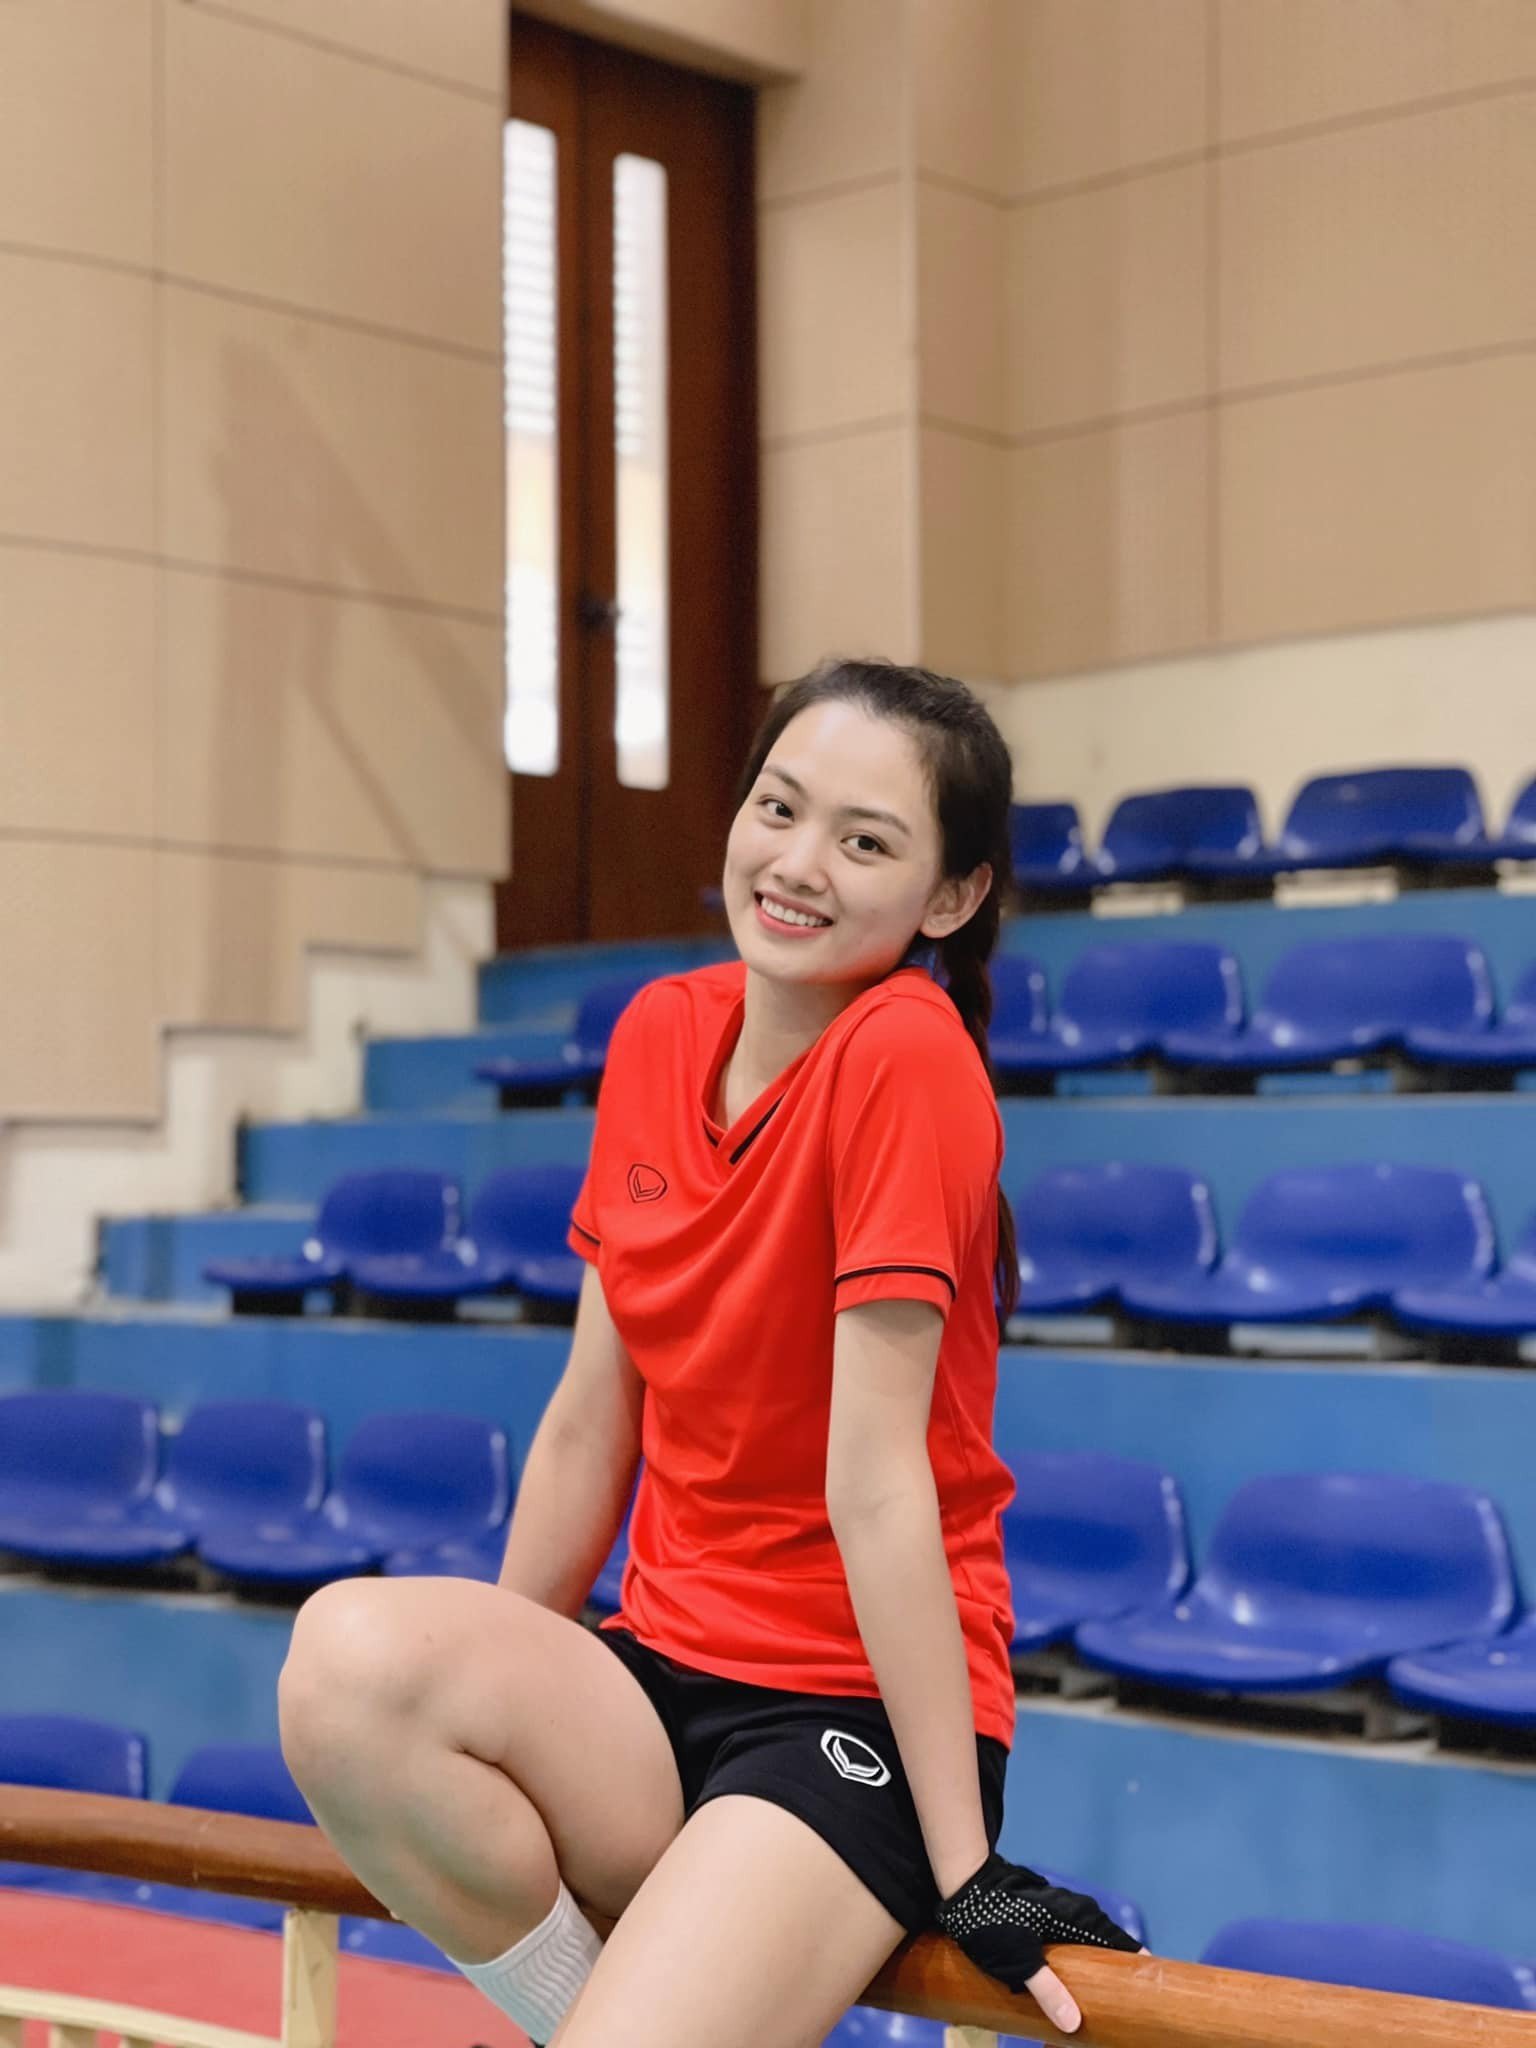 Hoa khôi bóng chuyền Việt Nam: Giỏi chuyên môn, sở hữu thành tích học tập xuất sắc - Ảnh 3